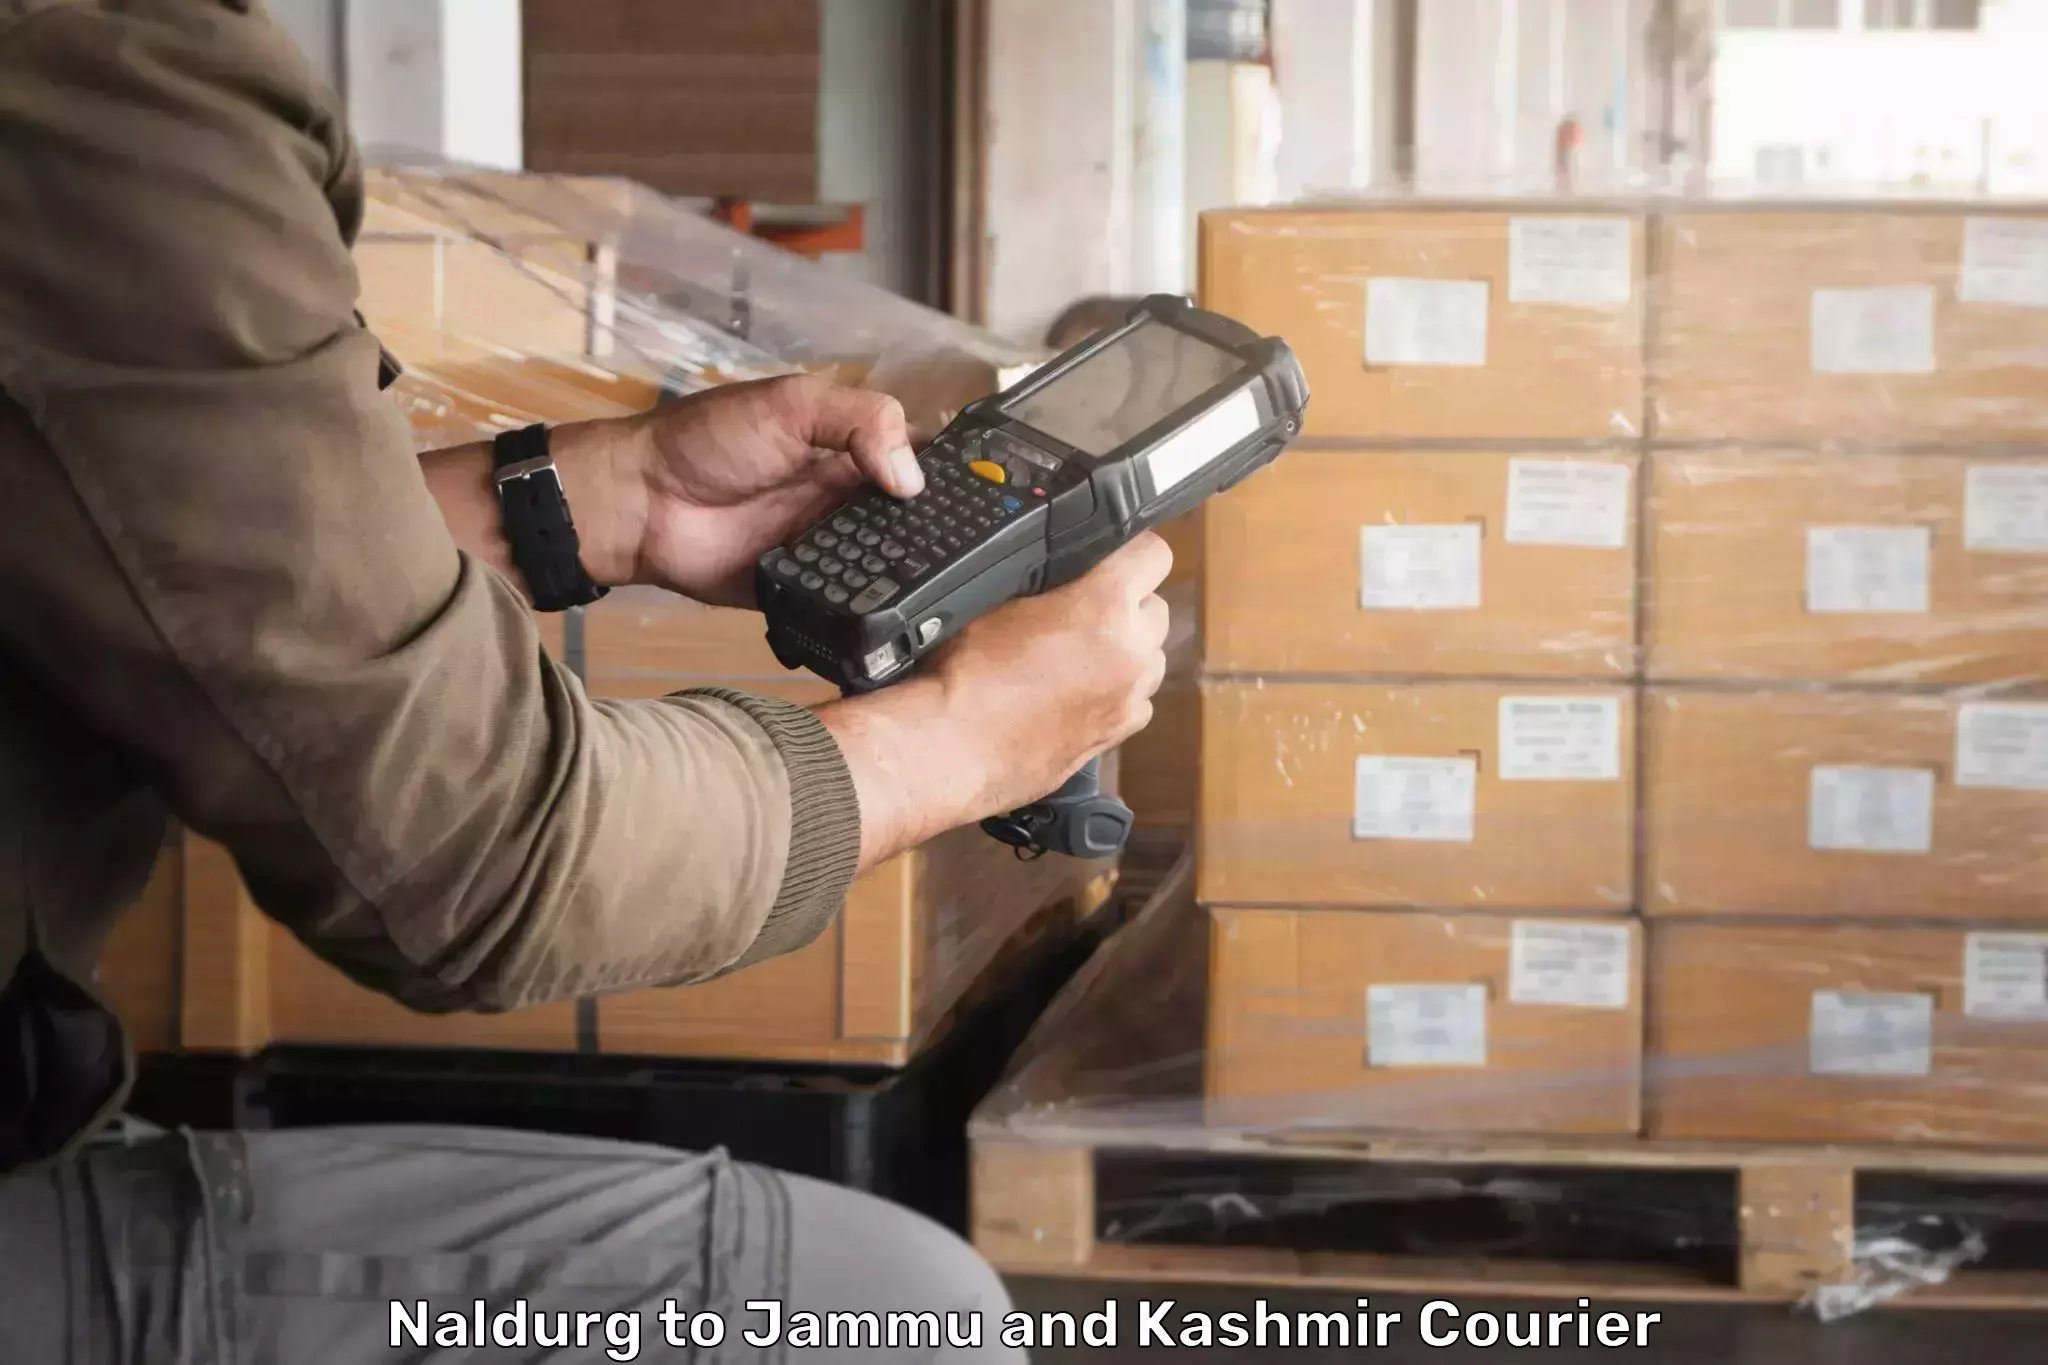 Professional courier services Naldurg to Kishtwar